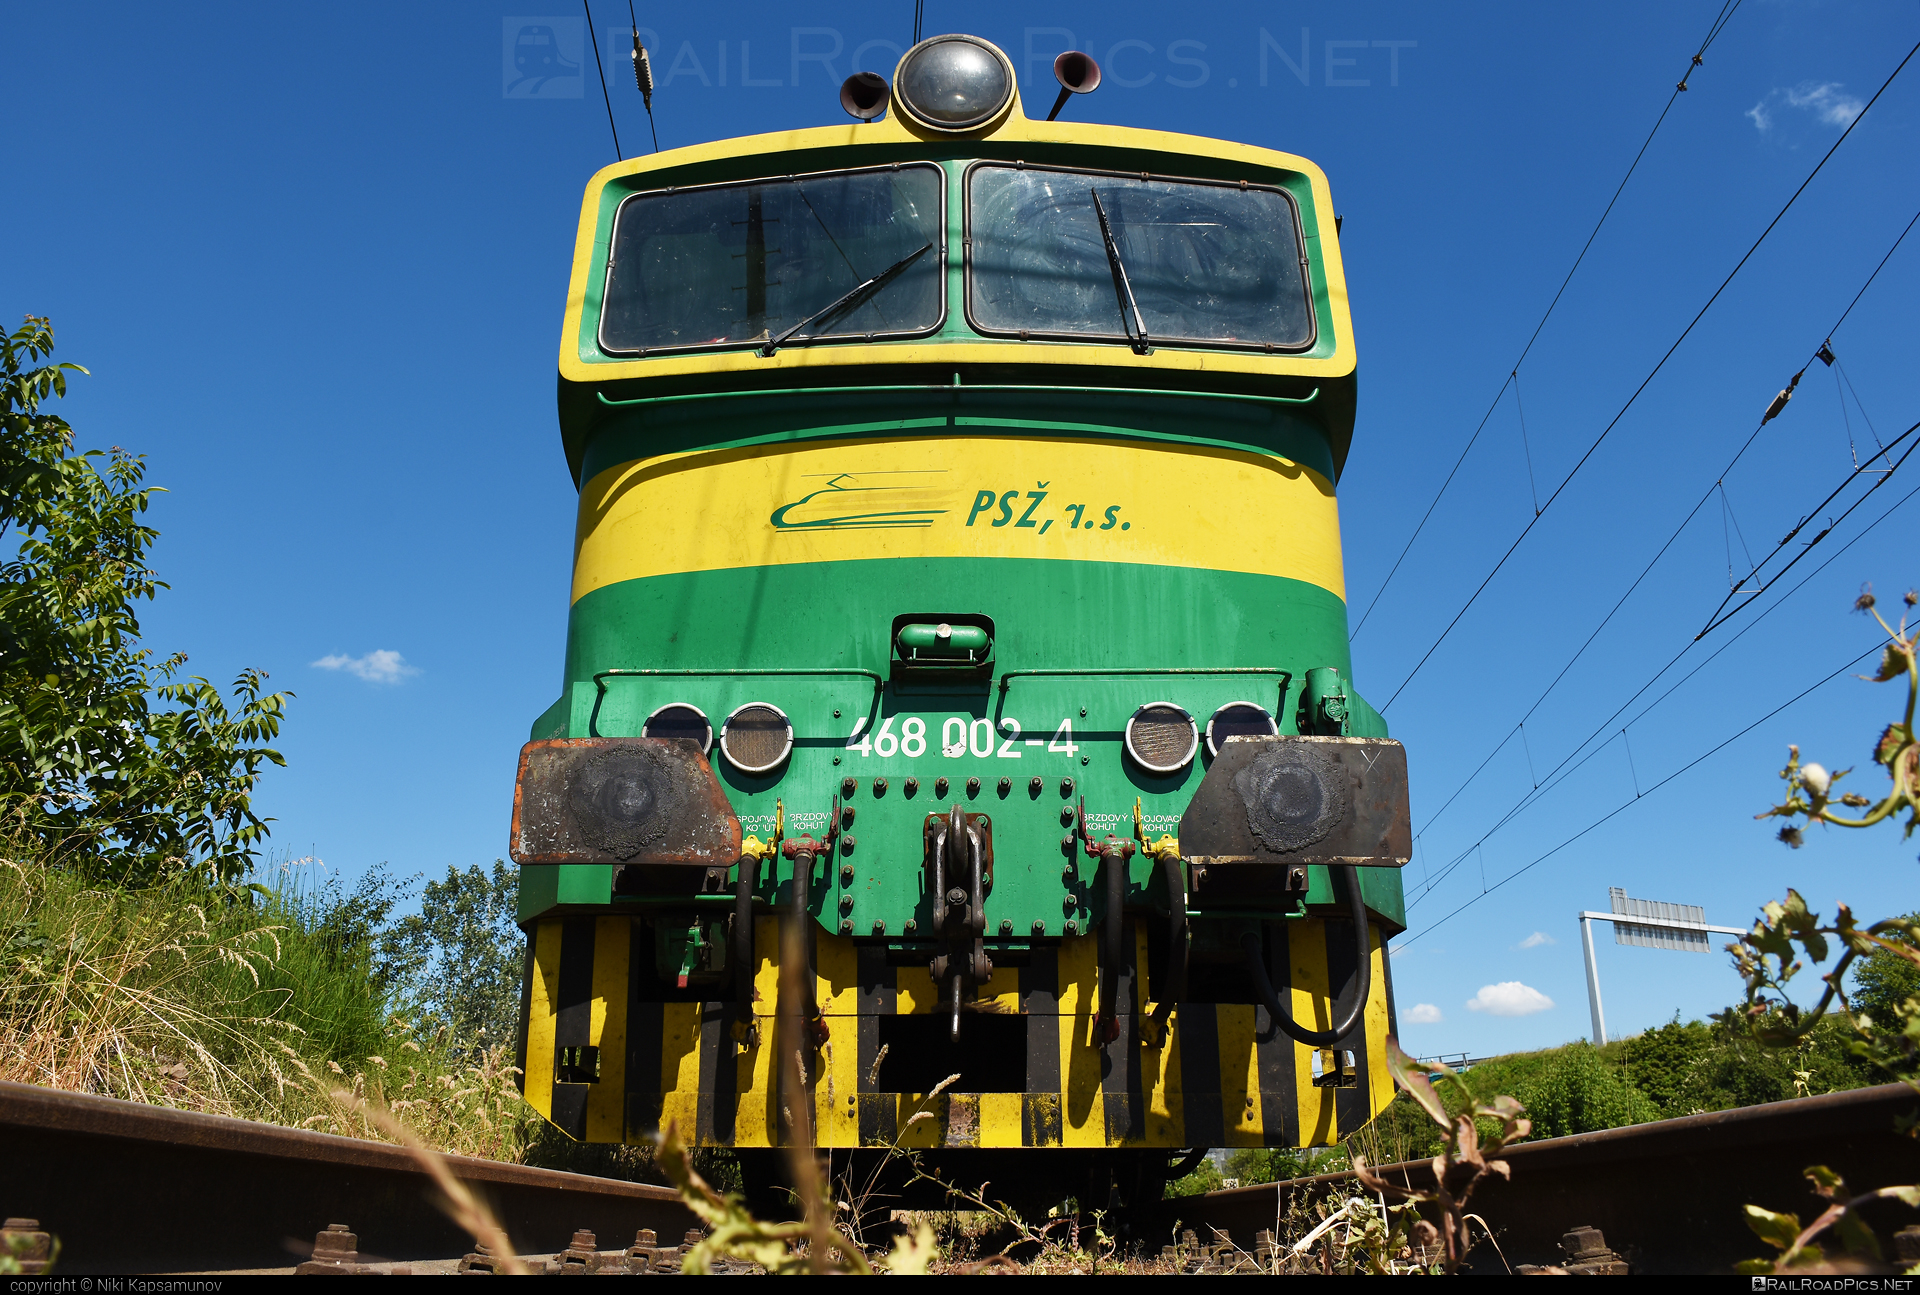 ČKD T 478.3 (753) - 468 002-4 operated by Prvá Slovenská železničná, a.s. #brejlovec #ckd #ckdclass753 #ckdt4783 #locomotive753 #okuliarnik #prvaslovenskazeleznicna #prvaslovenskazeleznicnaas #psz